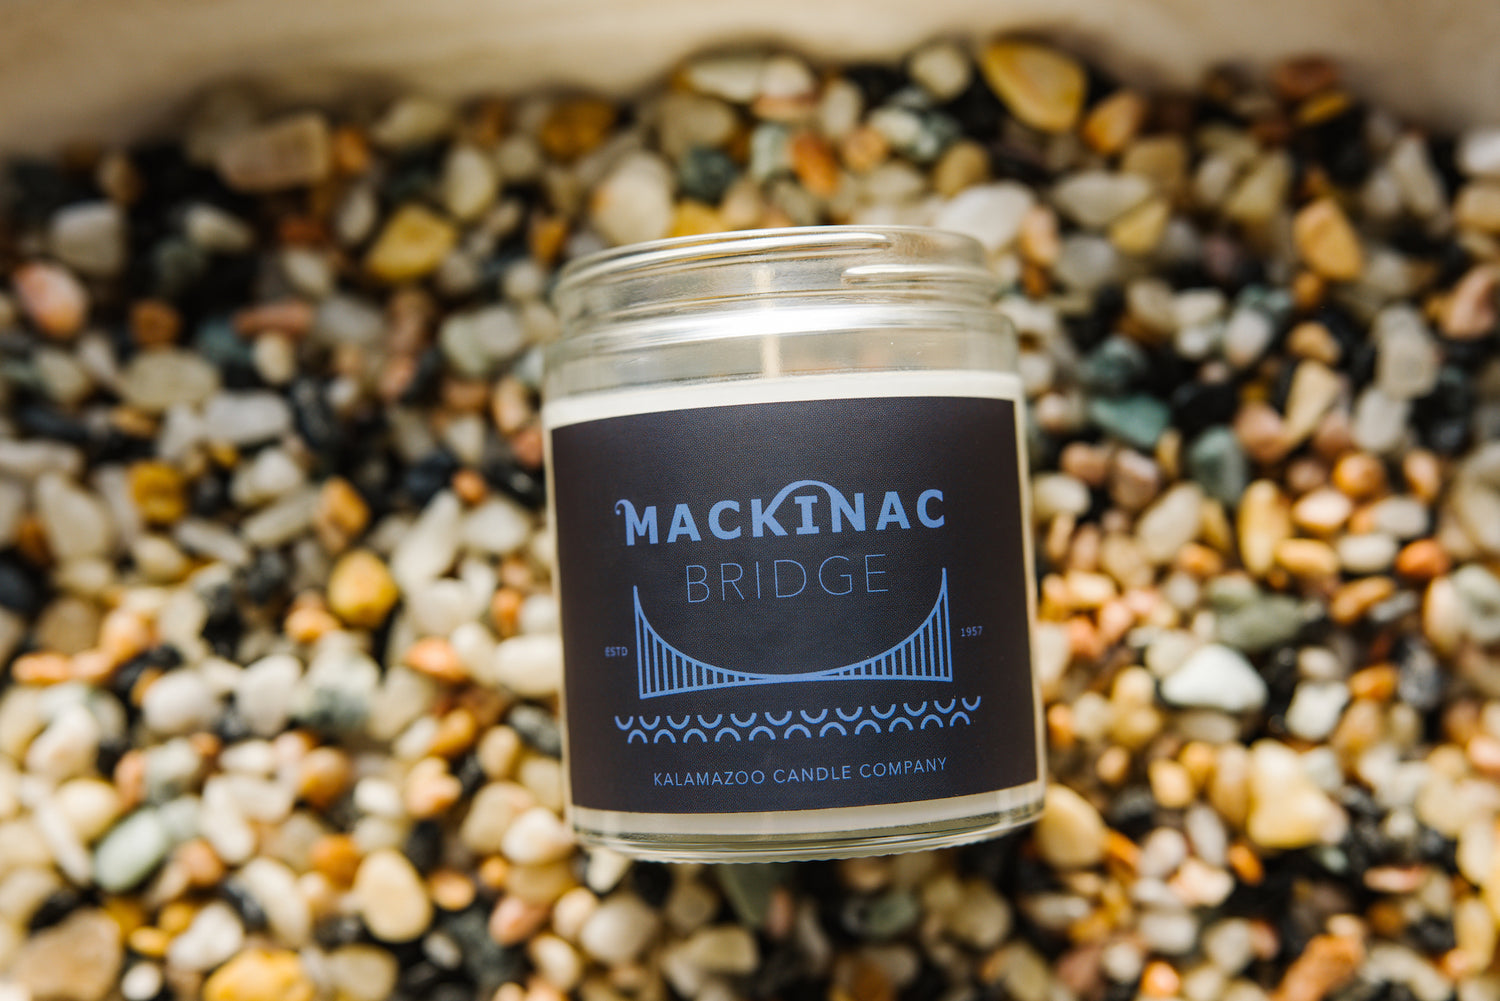 Mackinac Bridge Candle on bed of stones